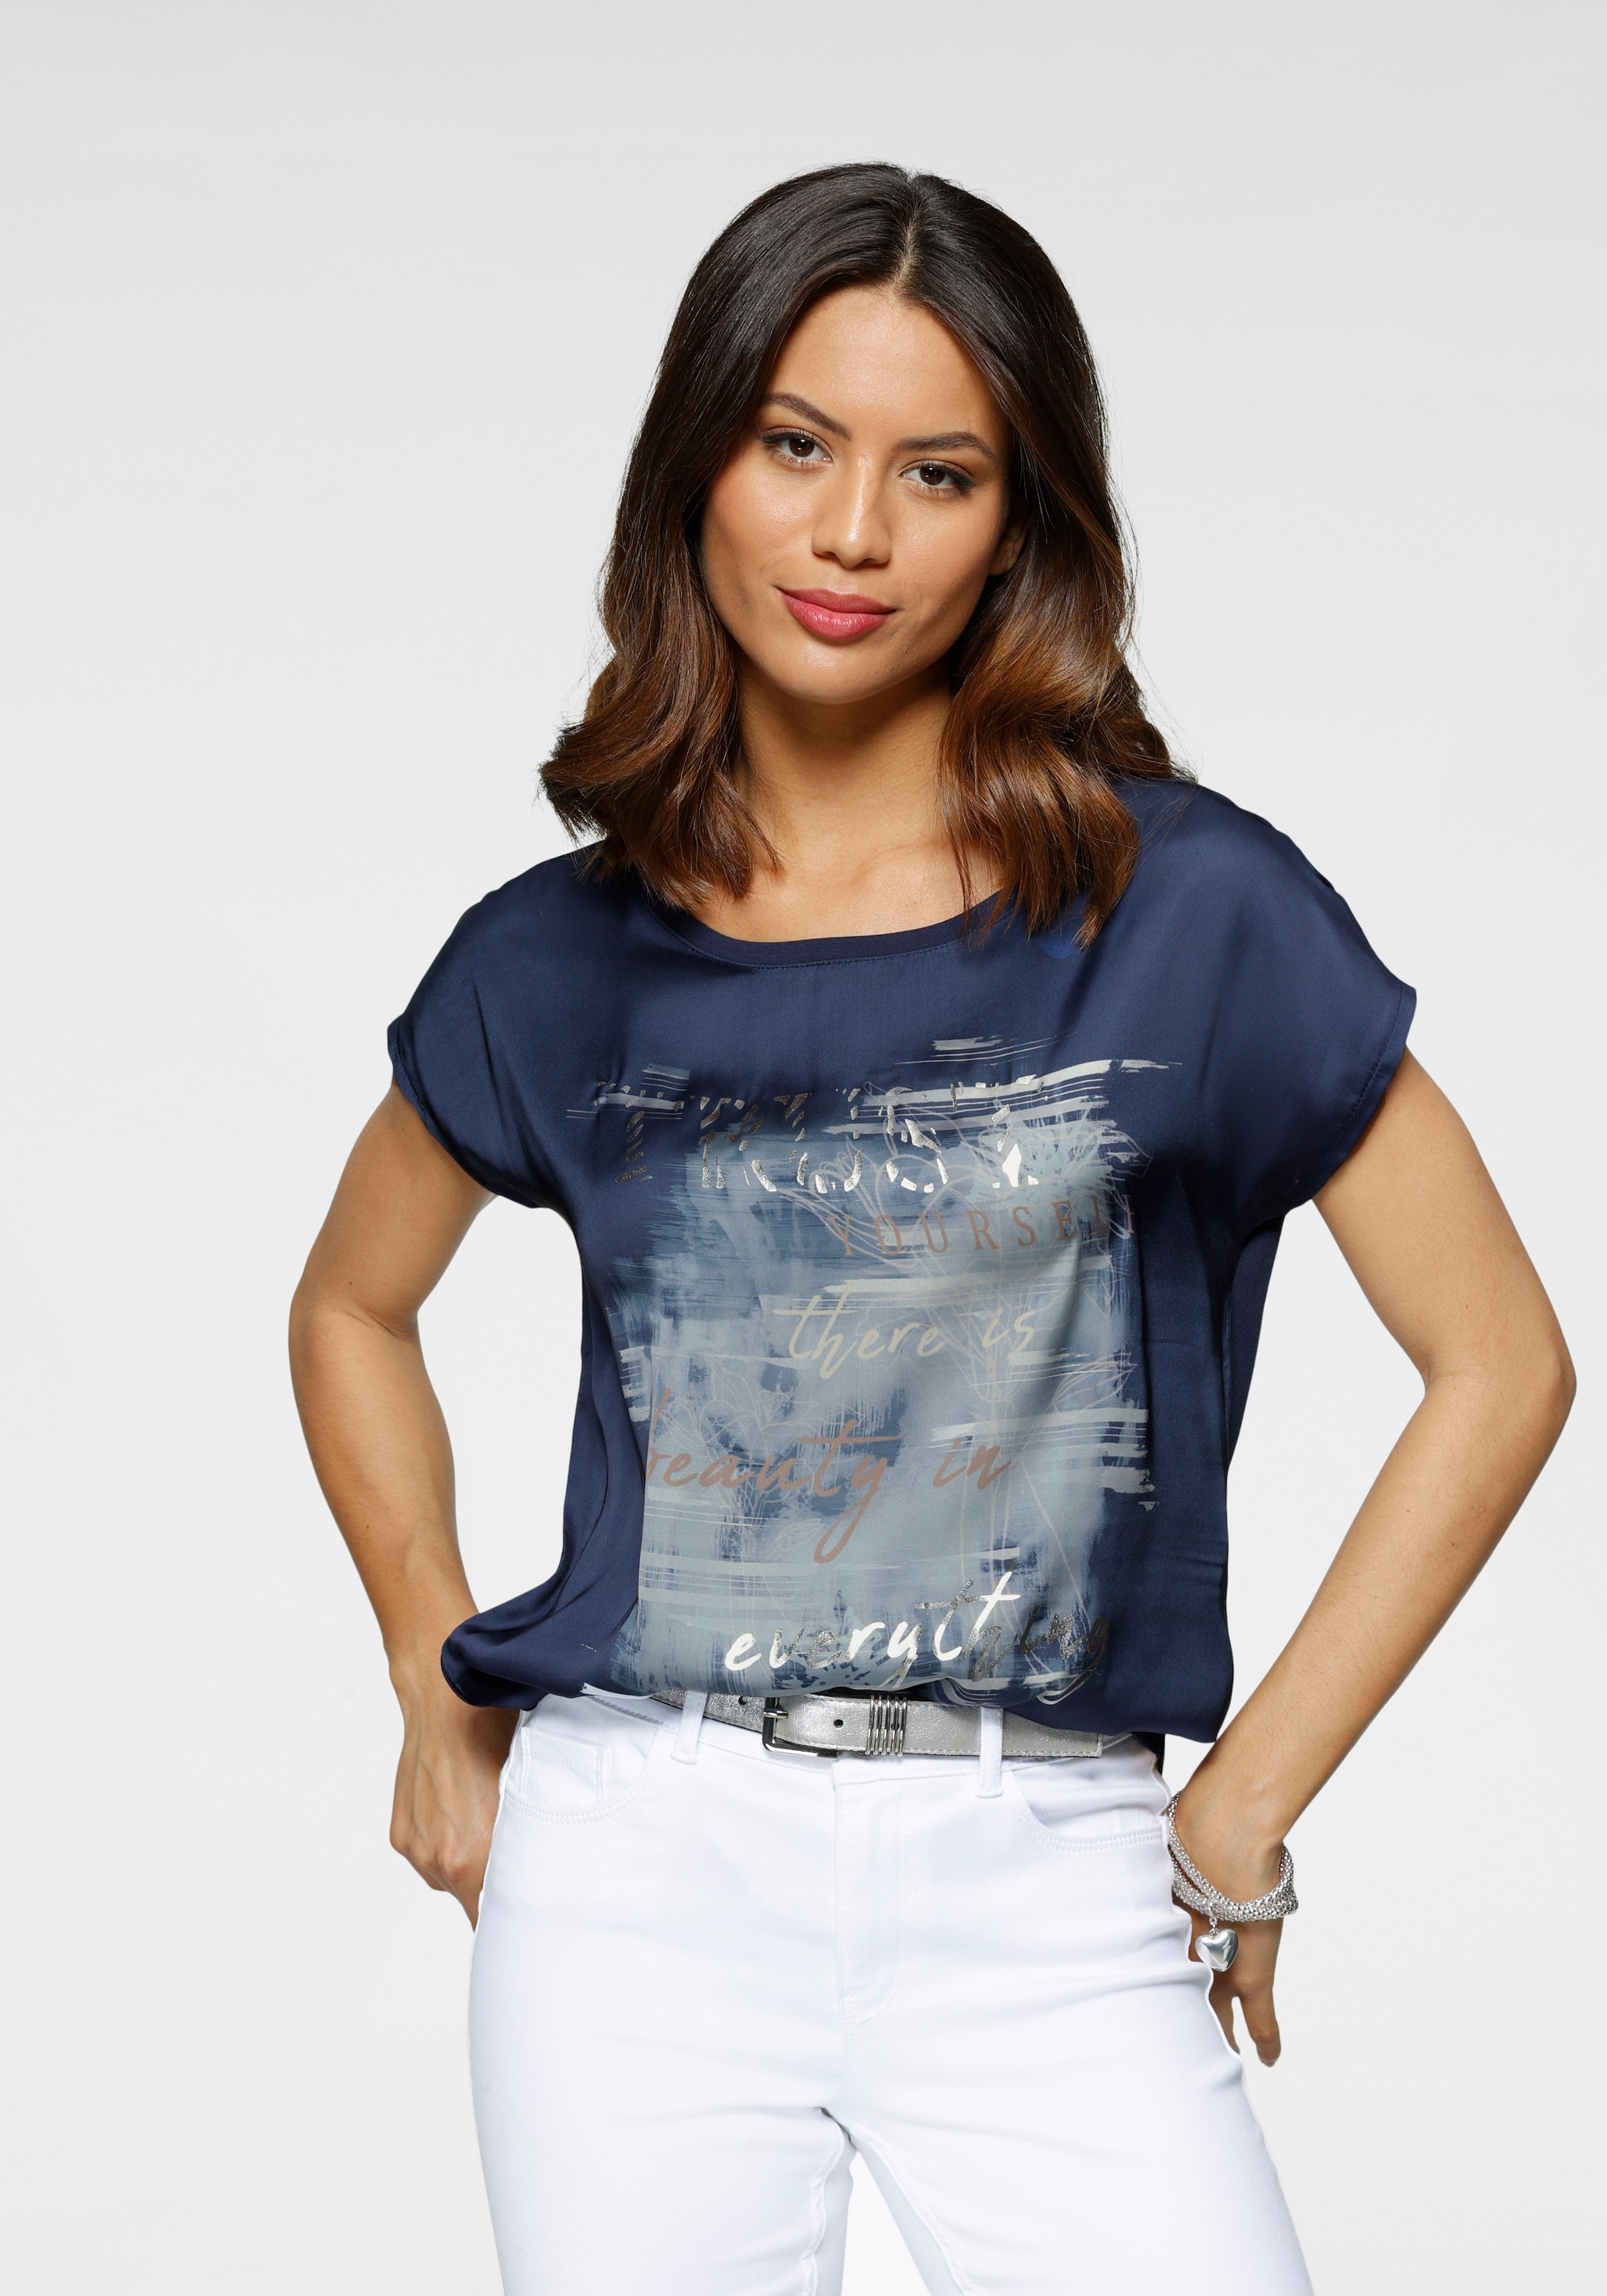 Shirtbluse, Schweiz shoppen aus bei Satin dezentem Aufdruck Laura mit Jelmoli-Versand Scott online